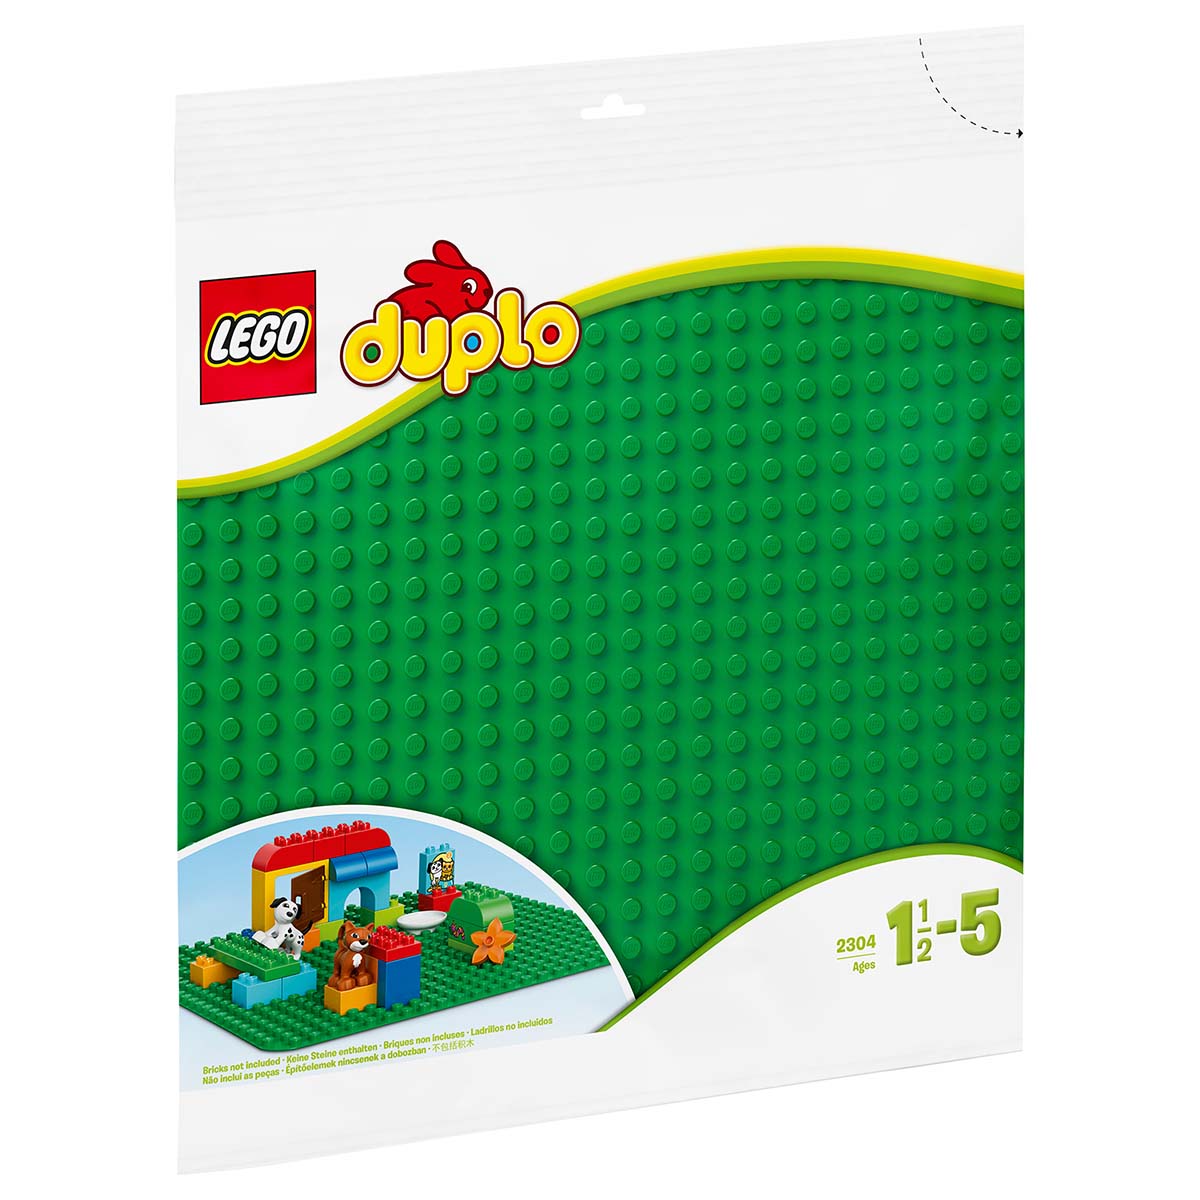 LEGO DUPLO 2304 GROTE BOUWPLAAT